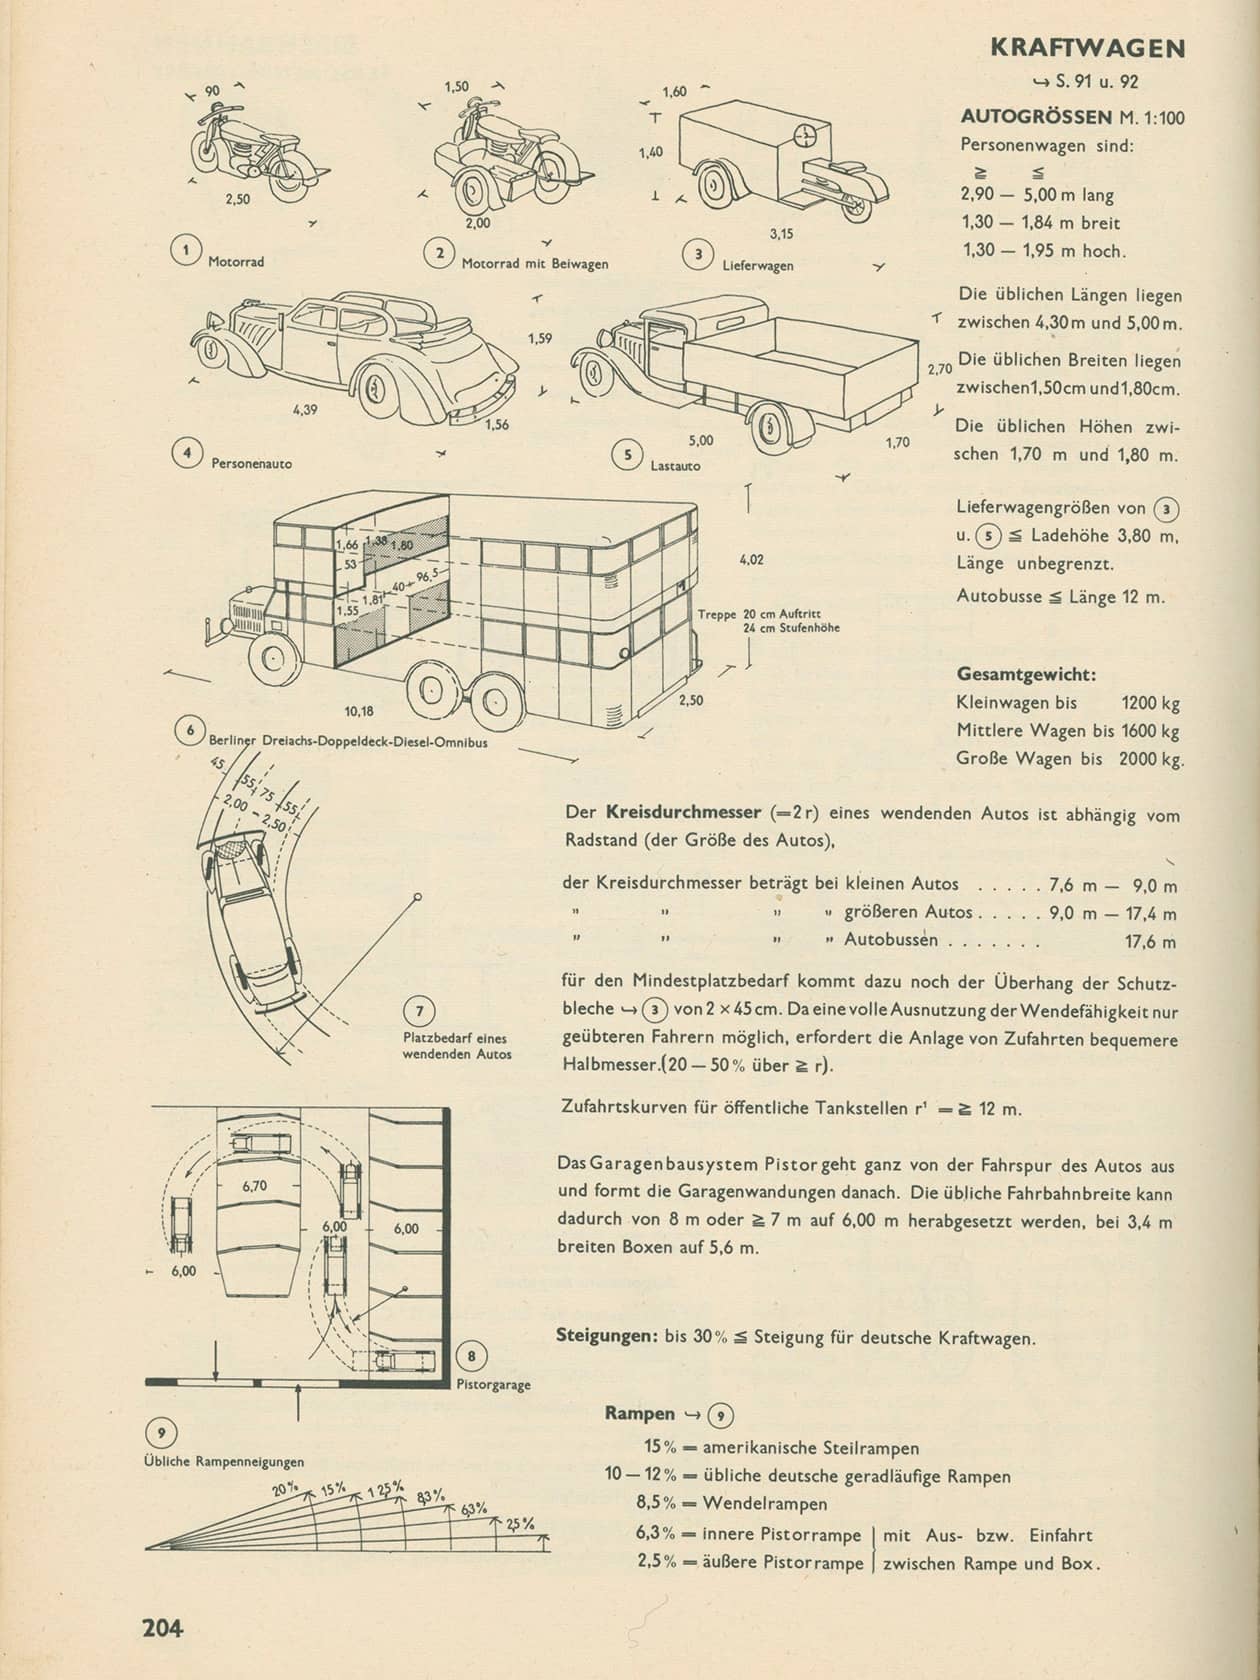 Erste Ausgabe der Bauentwurfslehre von Ernst Neufert, 1936,  “Kraftwagen”